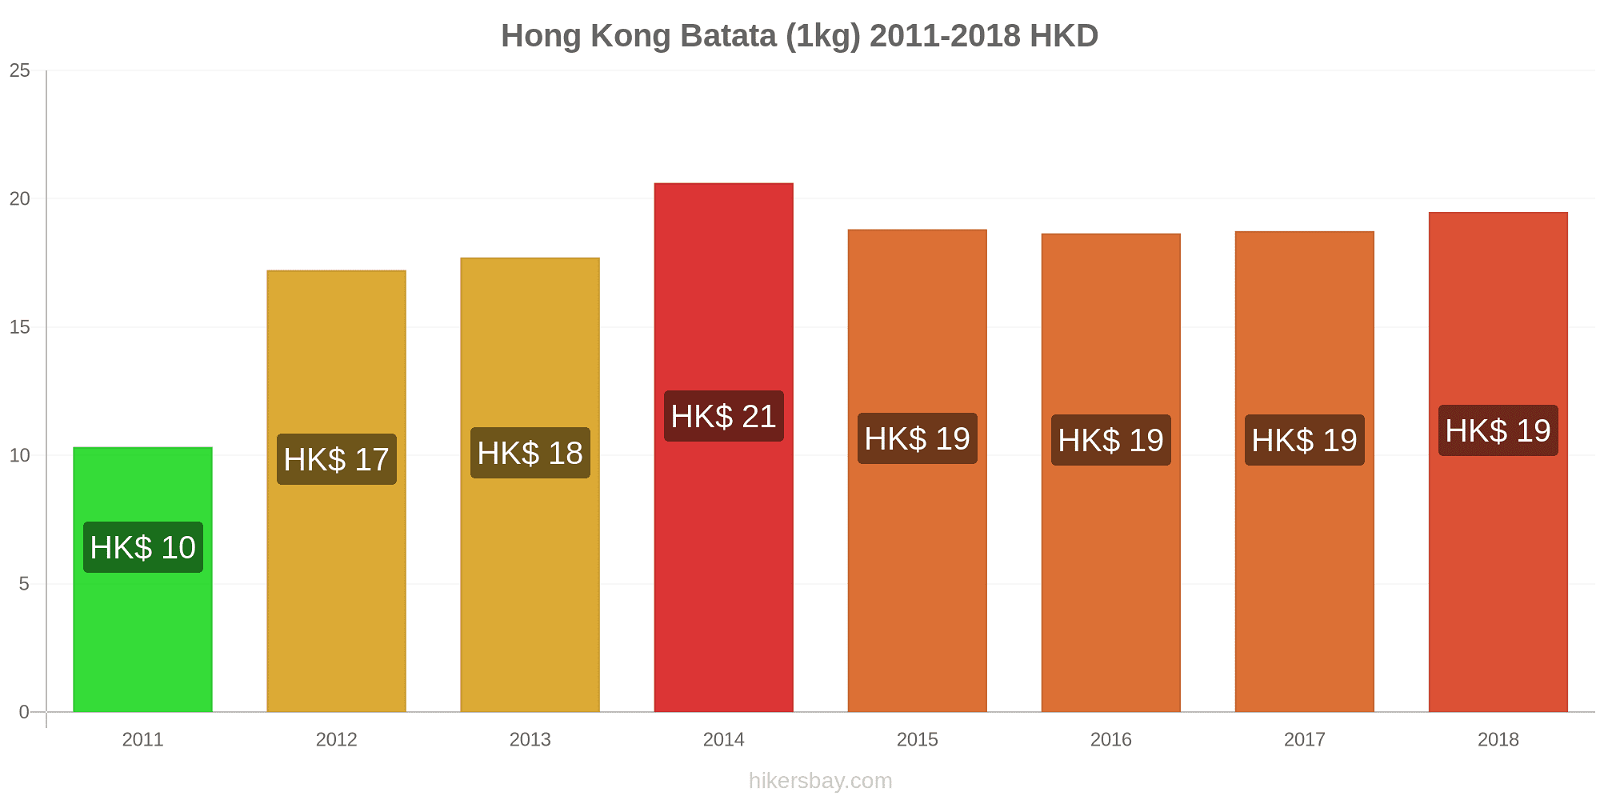 Hong Kong mudanças de preços Batatas (1kg) hikersbay.com